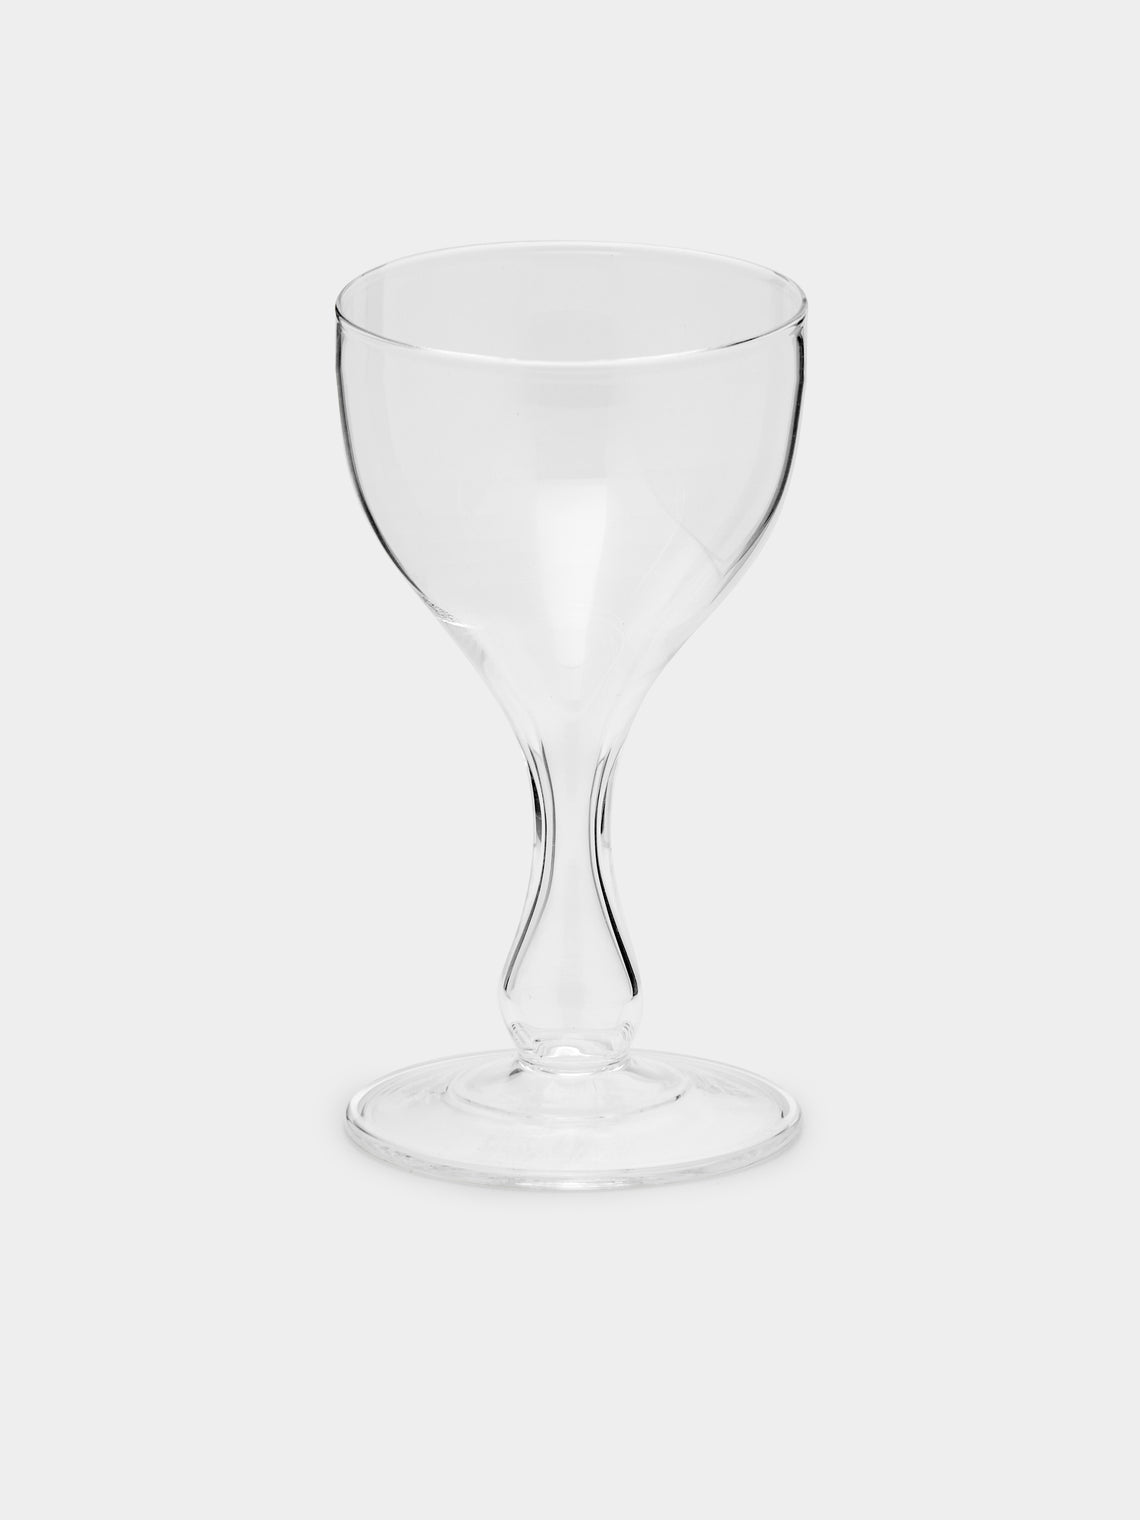 Astier de Villatte - Monique Hand-Blown Champagne Glass -  - ABASK - 